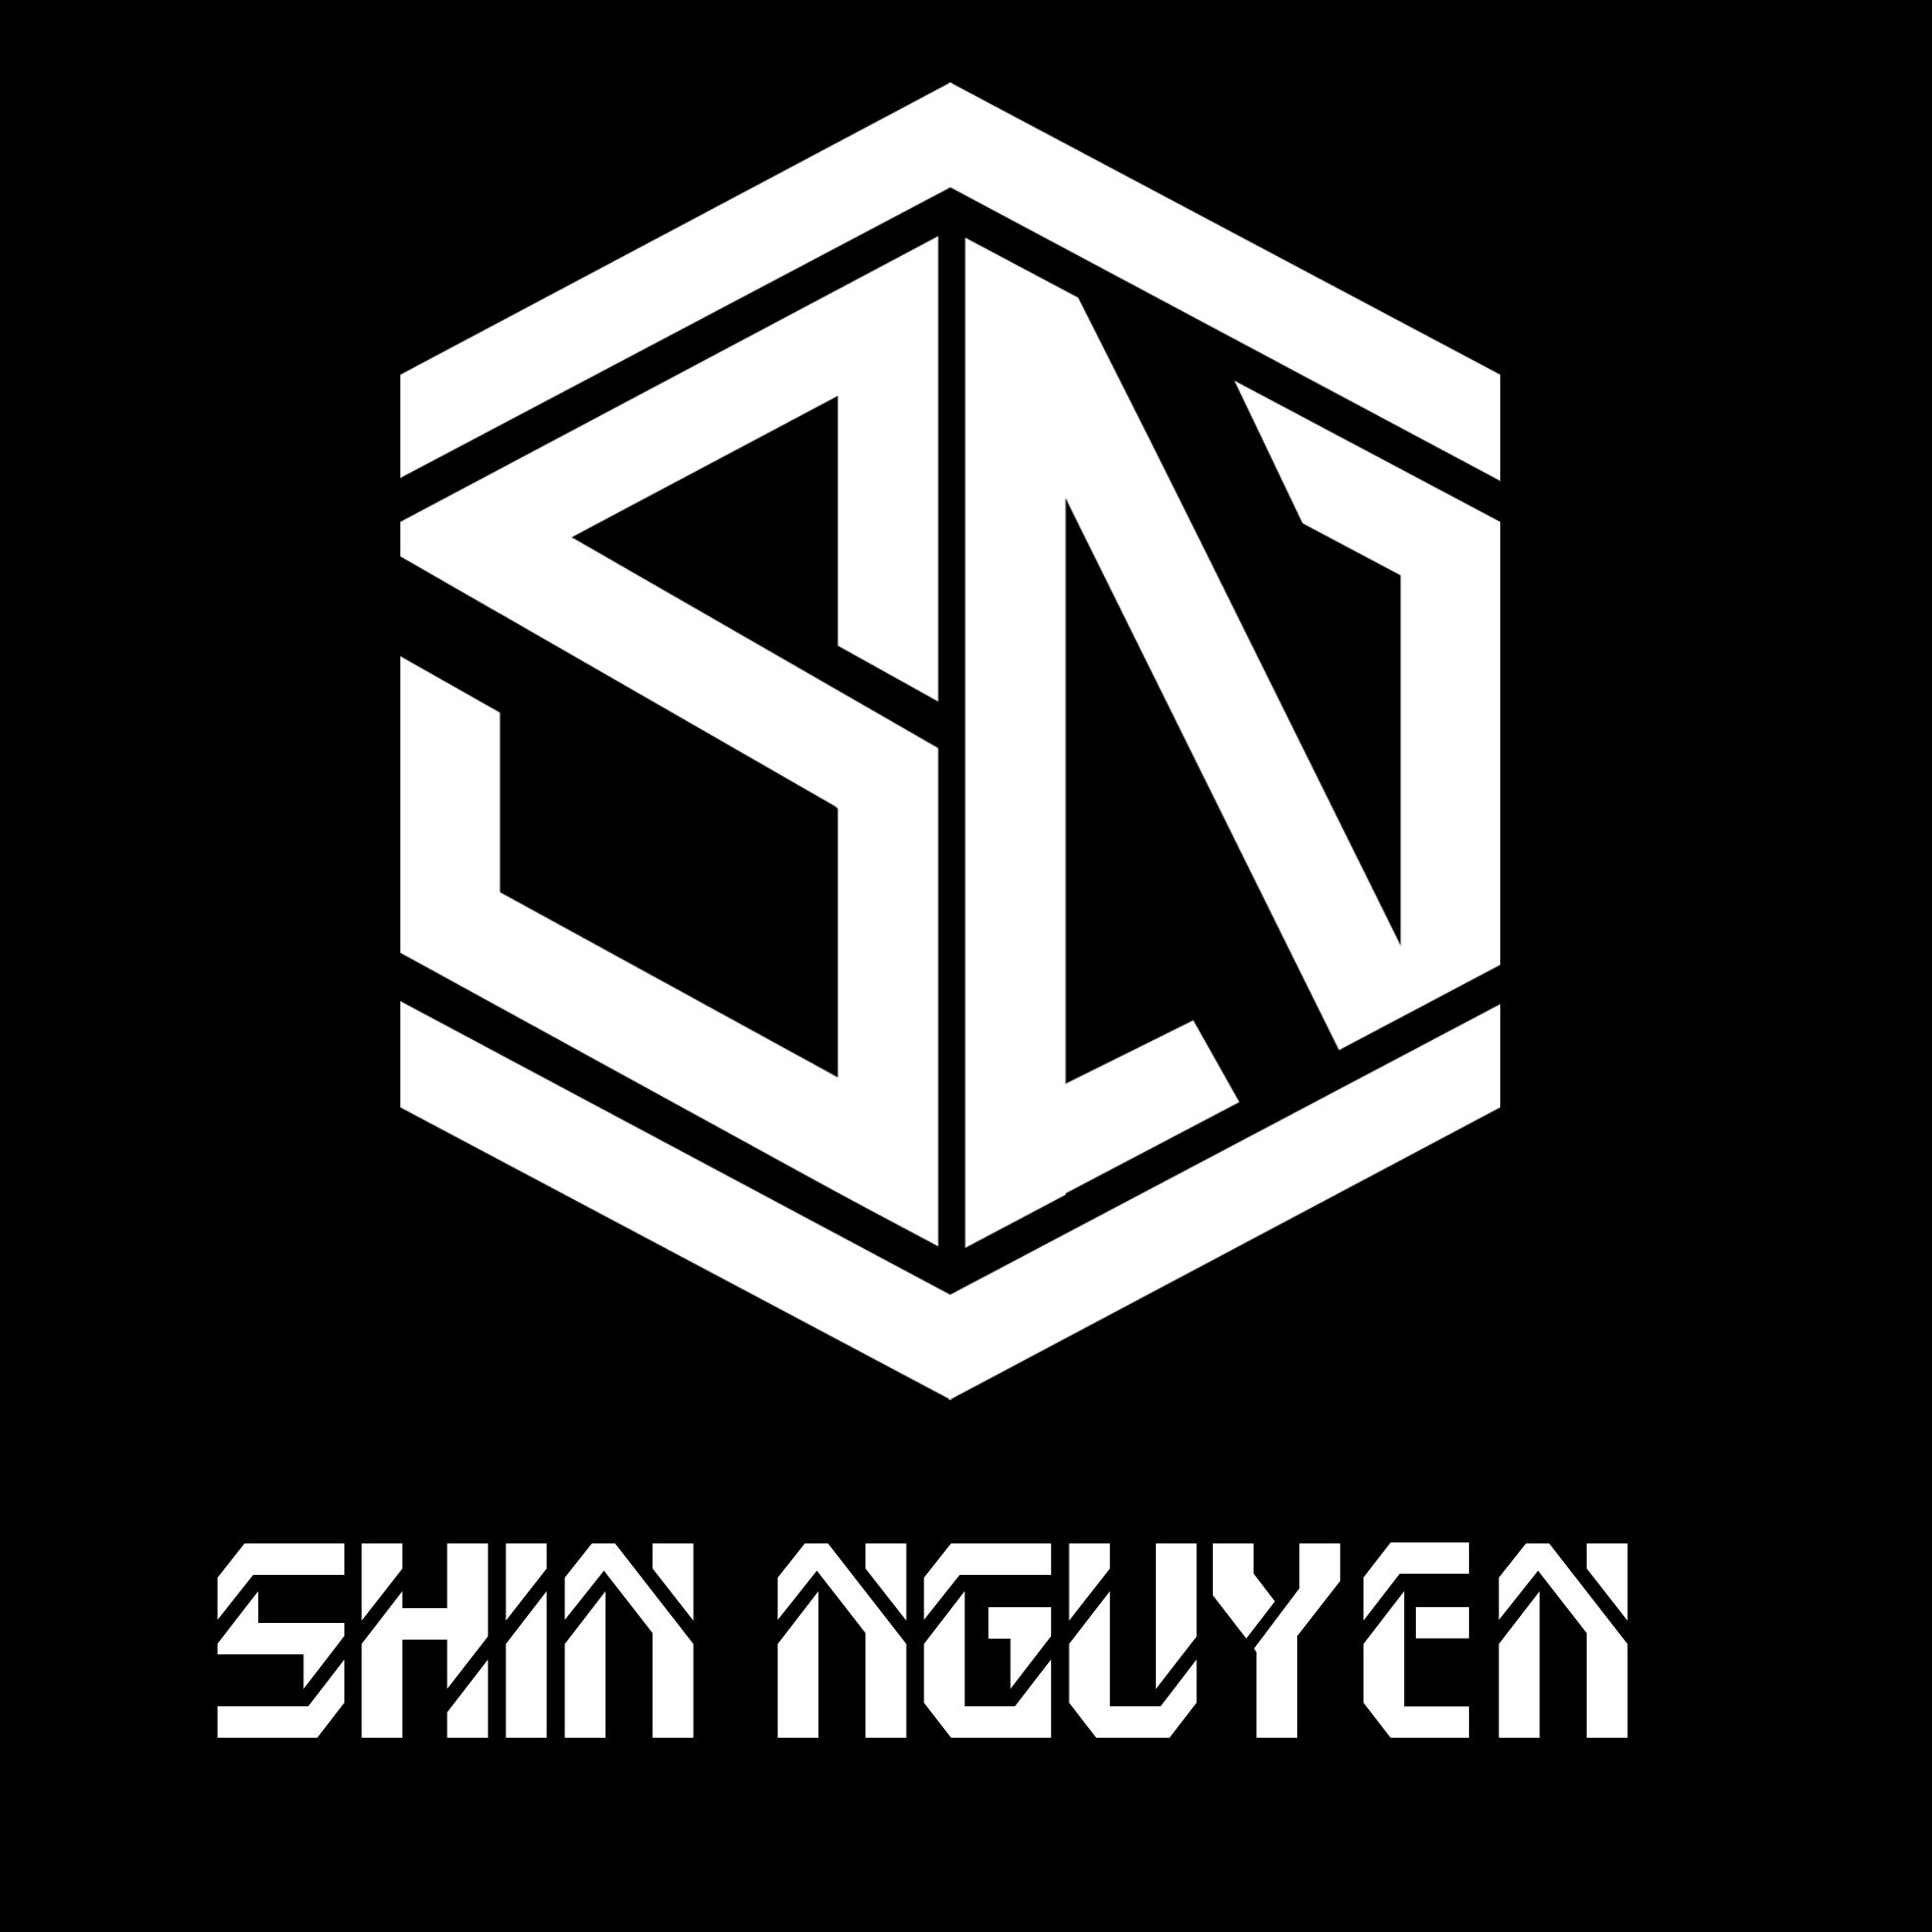 Stažení DEMO NST NHOM 2H 2022 - Shin Nguyễn Mix - Mua Nhạc Liên Hệ Zalo 0937060861